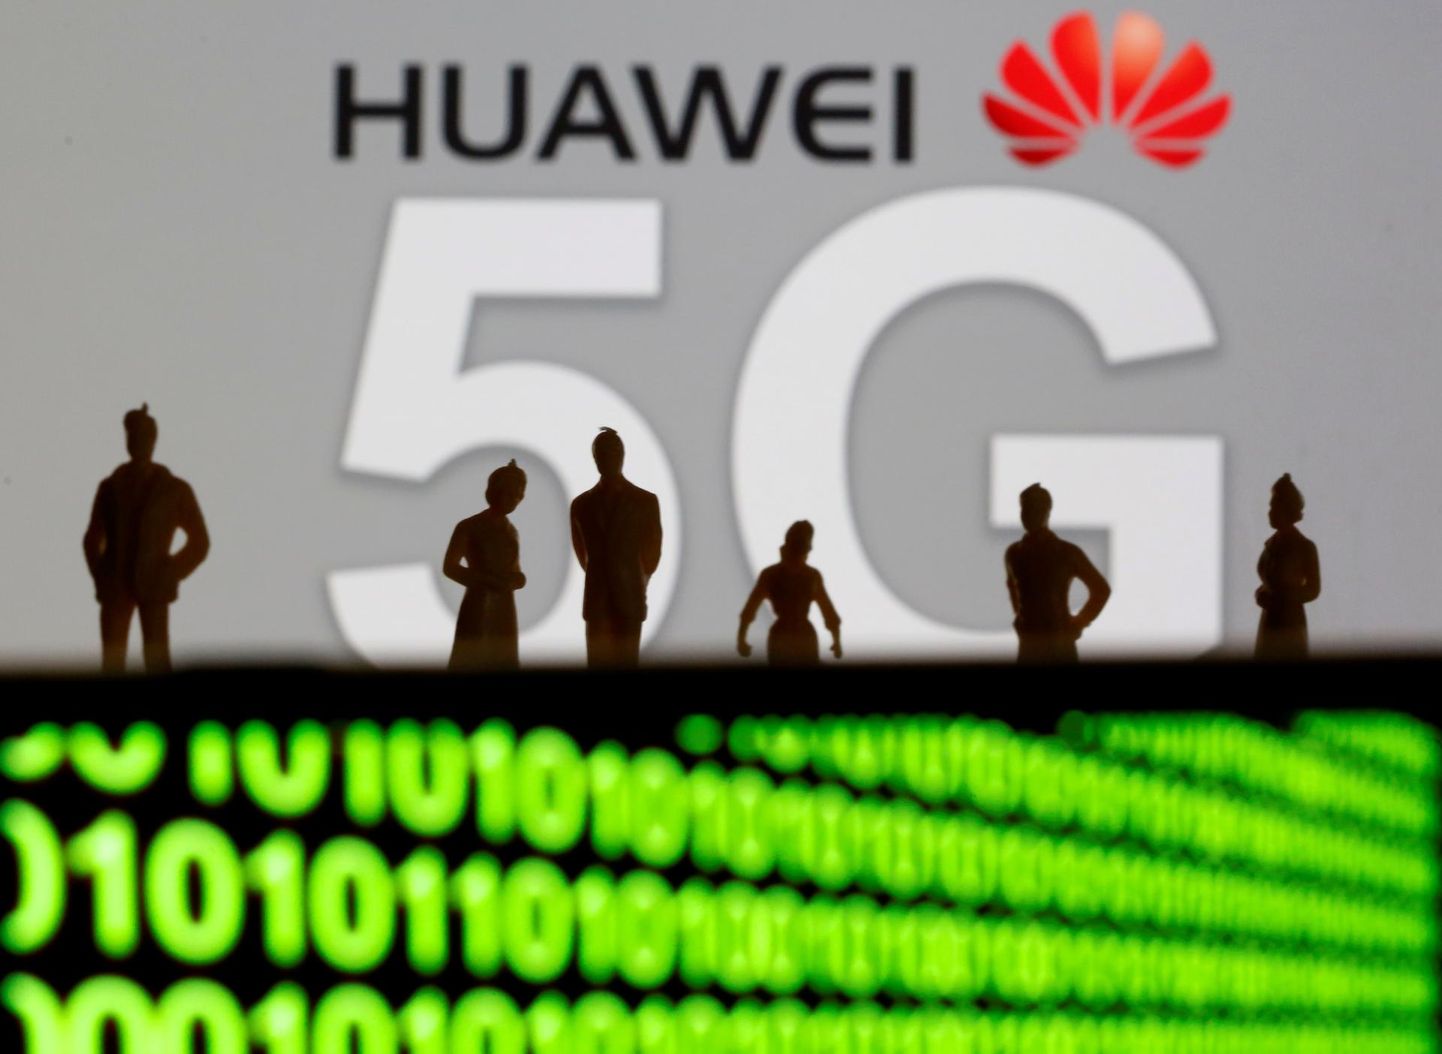 Hiina seadused kohustavad maailma juhtivat 5G seadmete tootjat Huaweid riigi luureasutustega koostööd tegema. Eksperdid näevad ohtu, et Hiina riik võib Hiina firma abil infot näpata või vajadusel sidevõrgu sootuks välja lülitada.